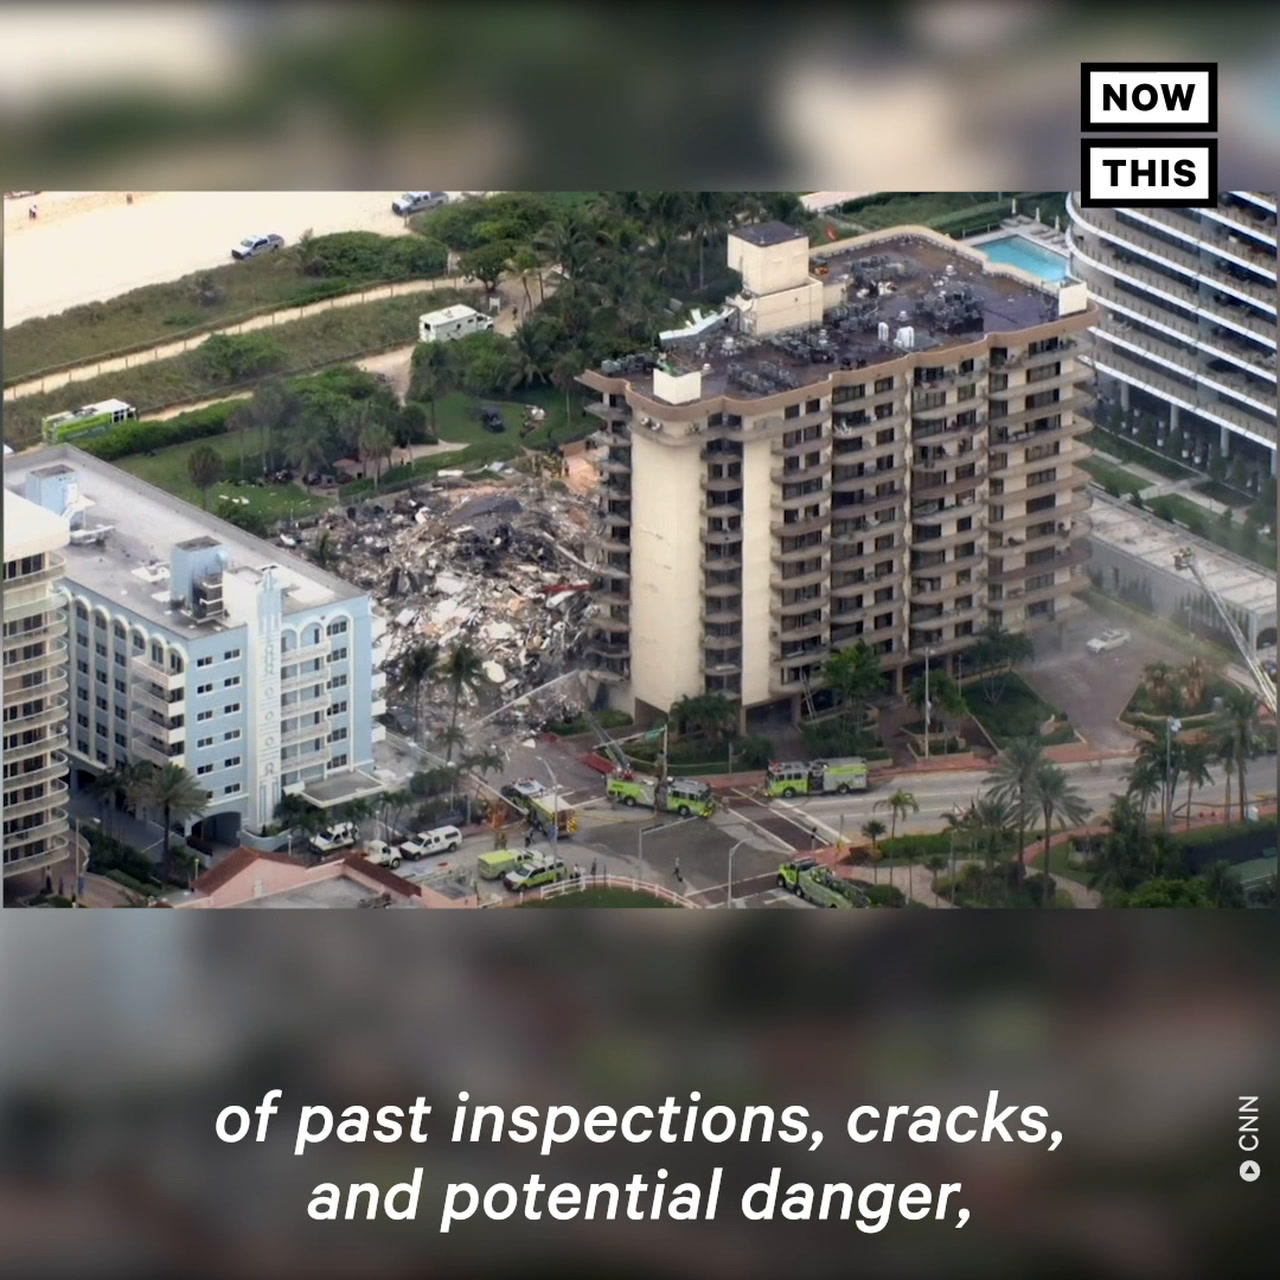 Miami Condo Faced $15M in Repairs Before Tragic Collapse